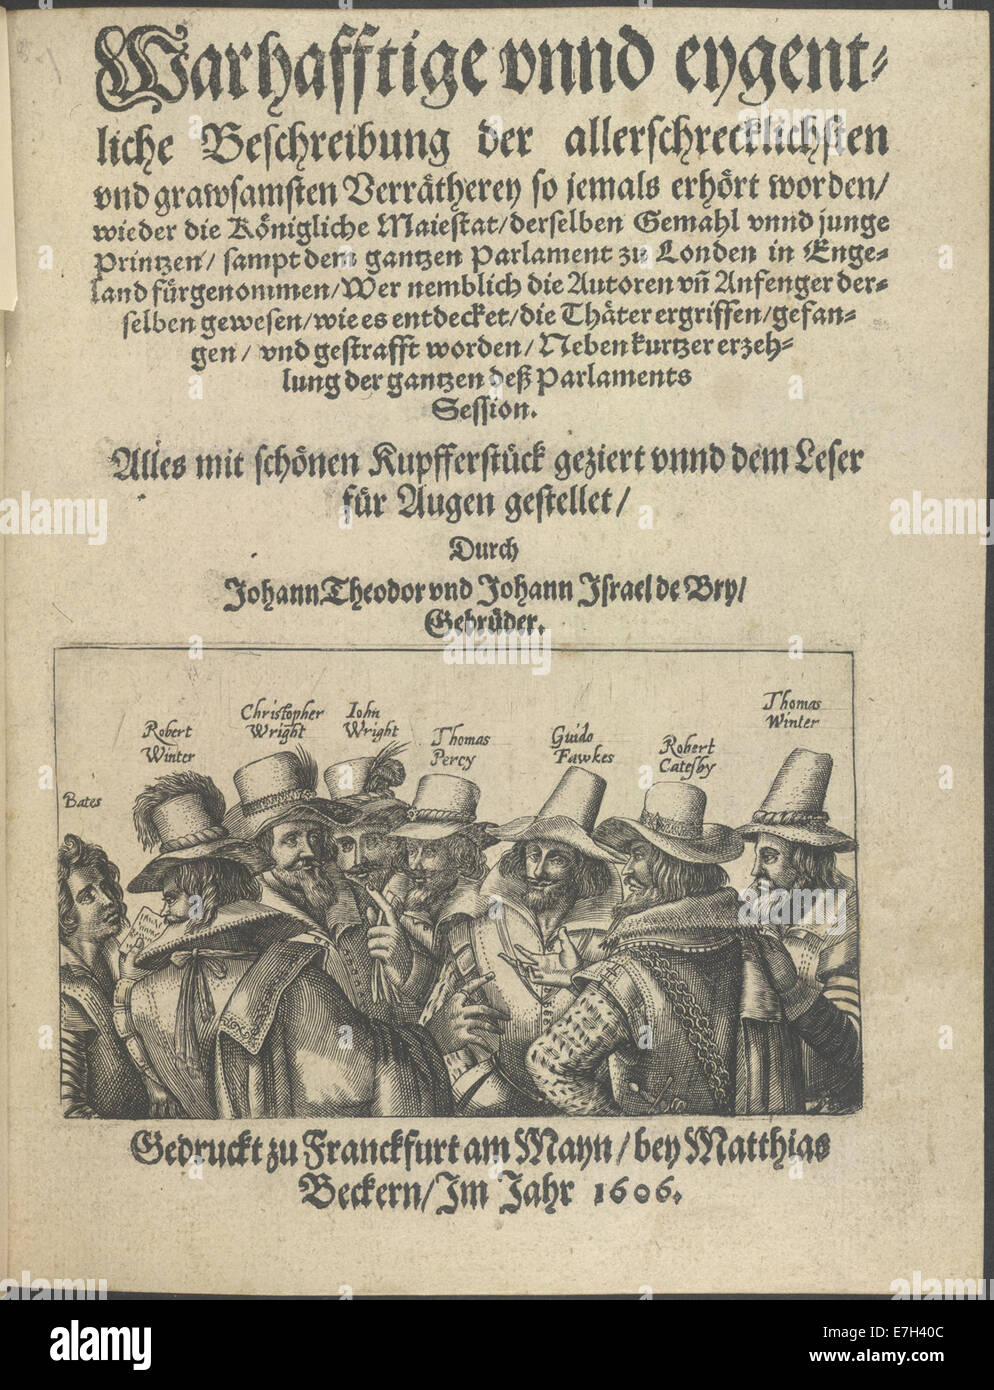 The Gunpowder Plot conspirators - Warhafftige Beschreibung der Verr%%C3%%A4therey (1606), title page - BL Stock Photo